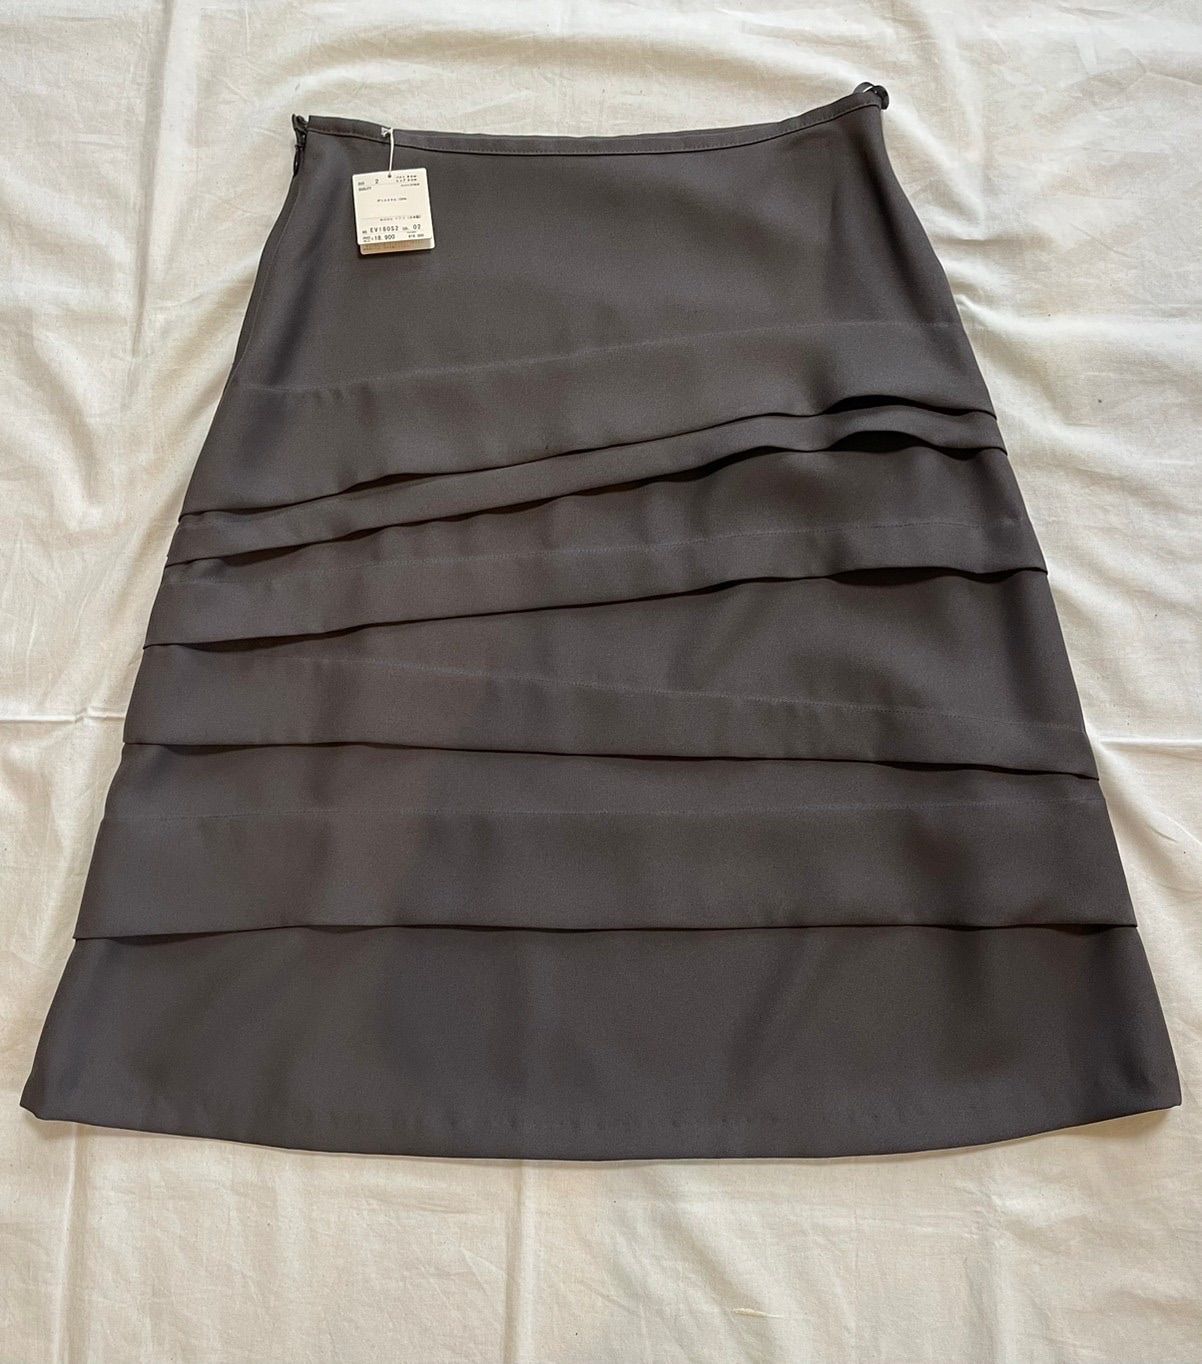 【店頭買取】イクコIKUKO タフタ素材たっぷりのロングスカート タグ付き新品 ロングスカート